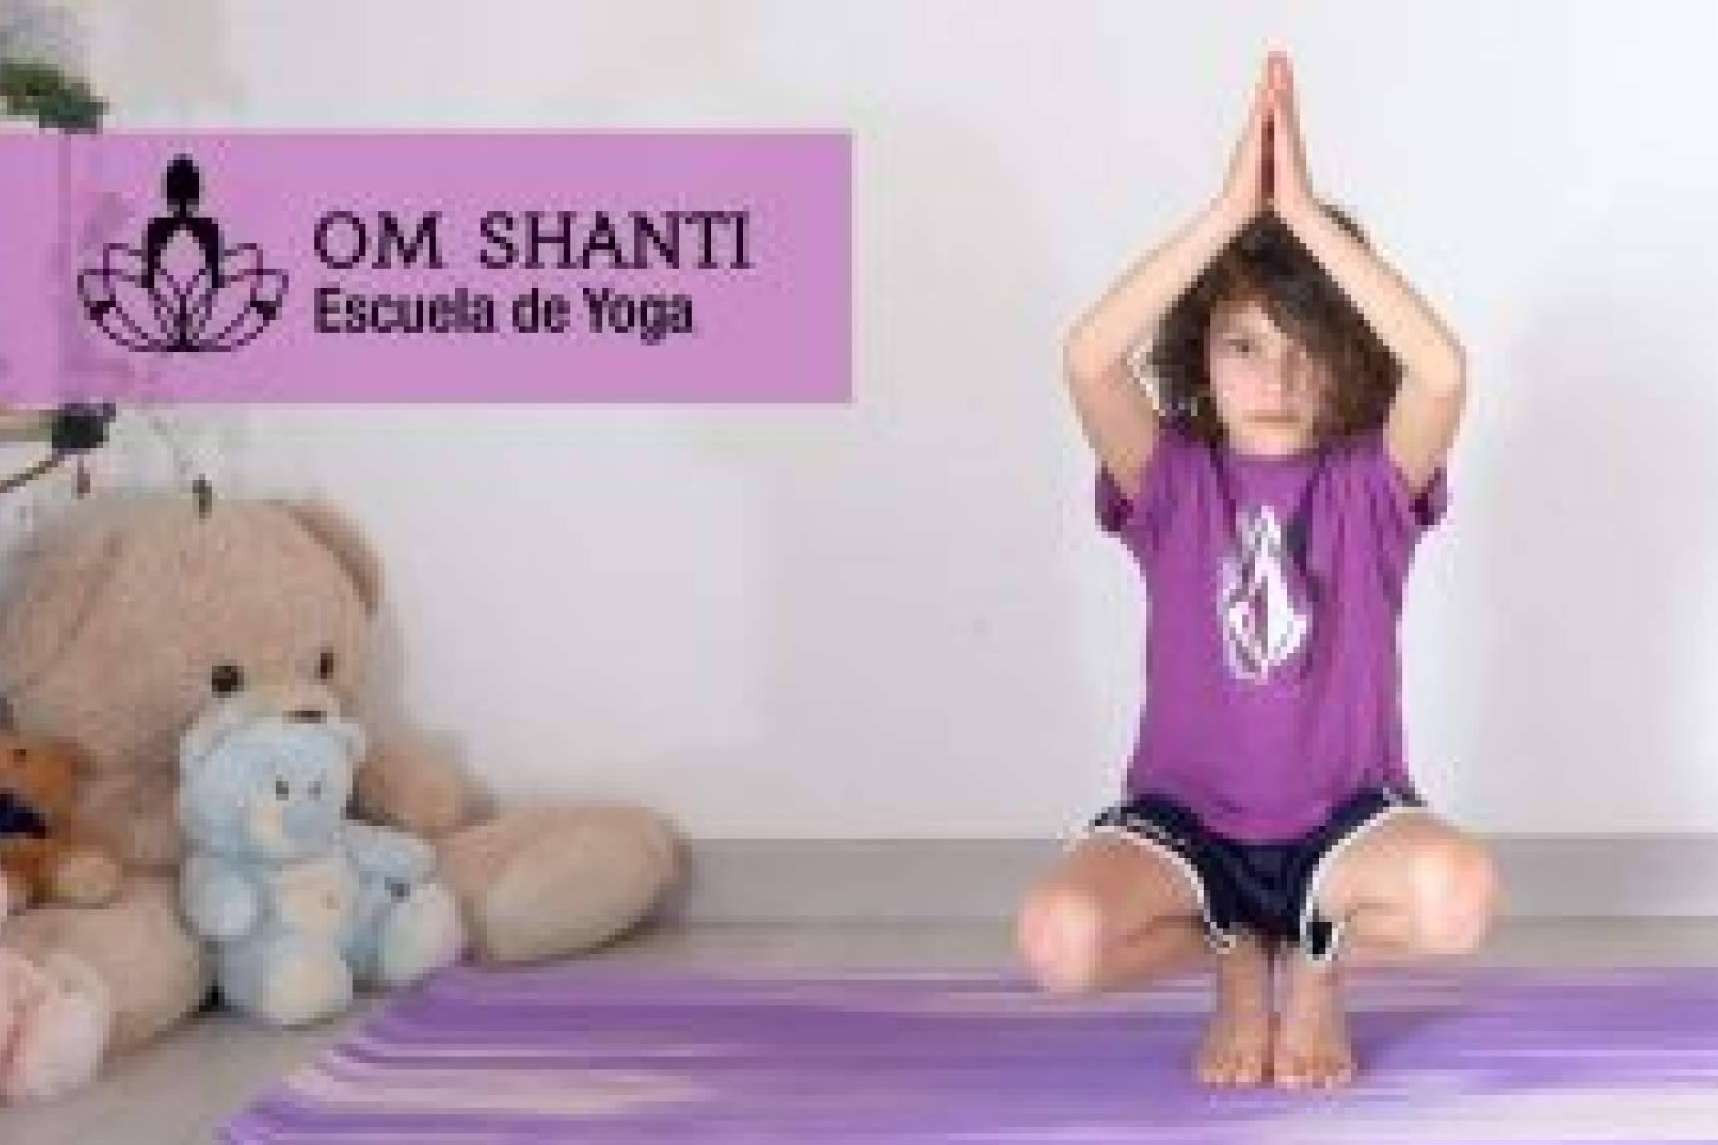  Clases de yoga online para niños y niñas con Om Shanti Yoga 